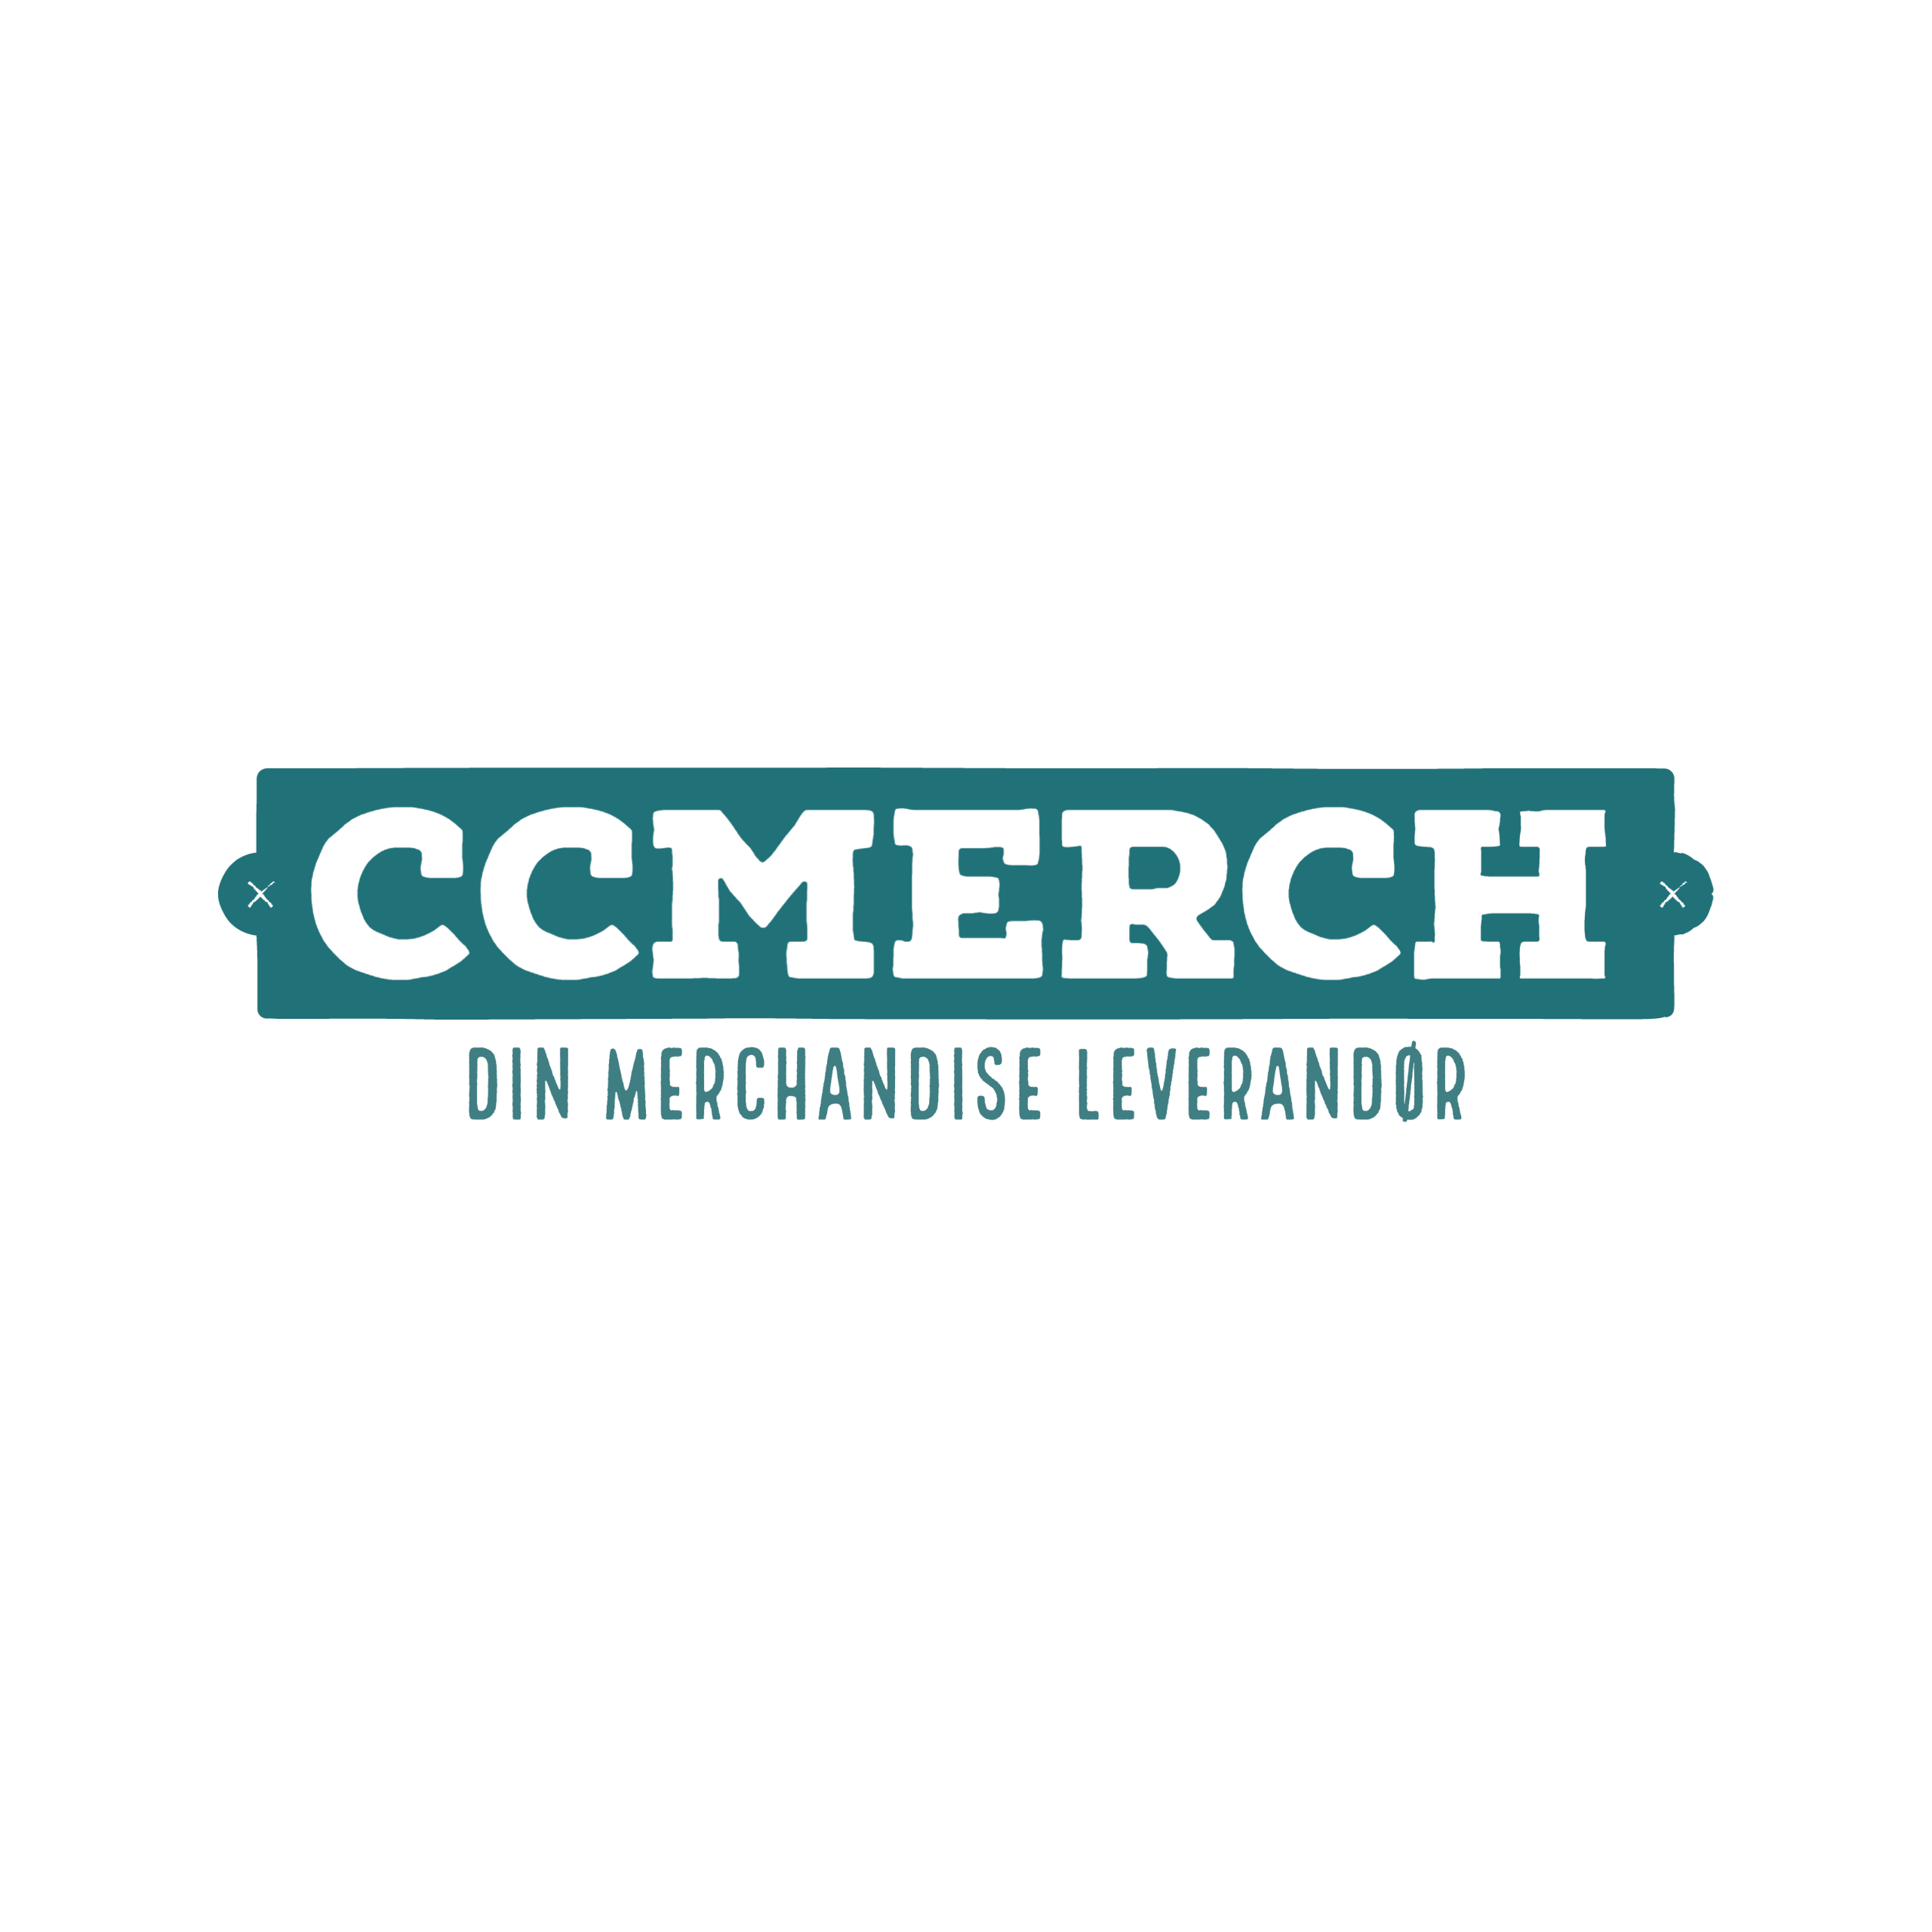 CCMerch